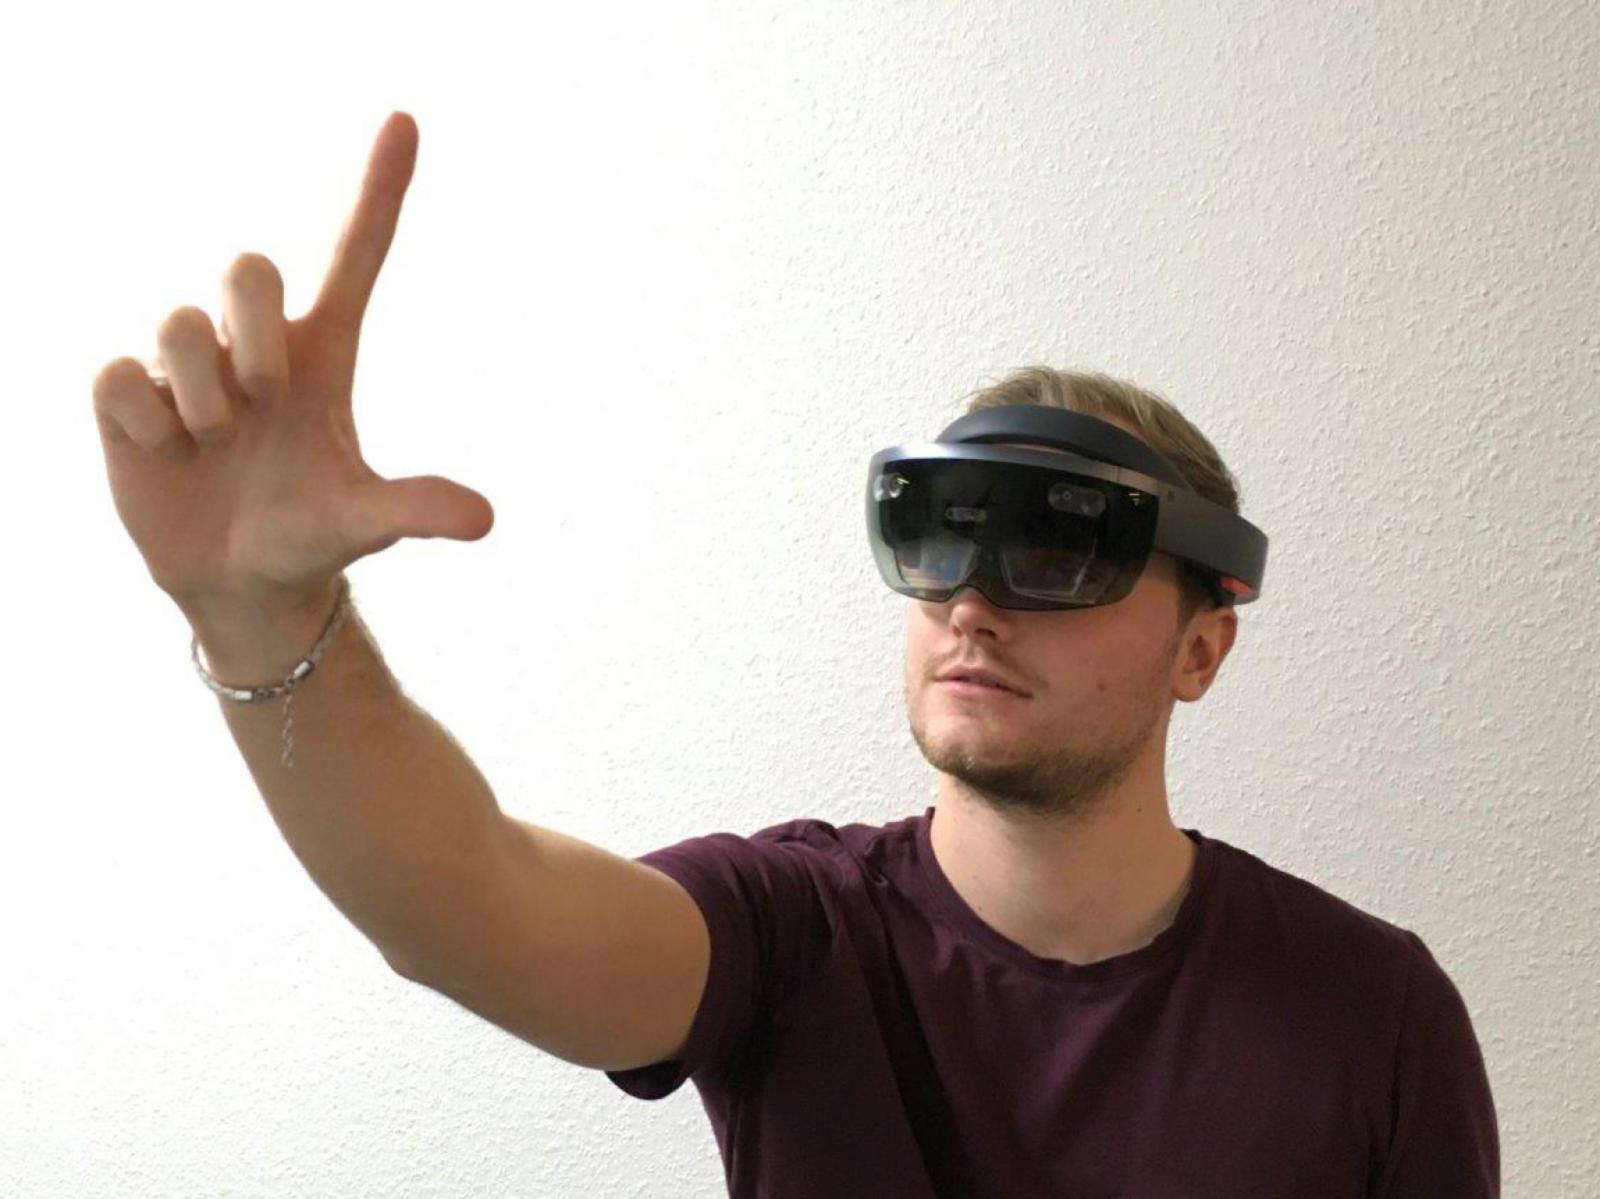 Im Workshop haben die Studierenden verschiedene Dinge ausprobiert: unter anderem eine VR-Brille (Virtual Reality), … 